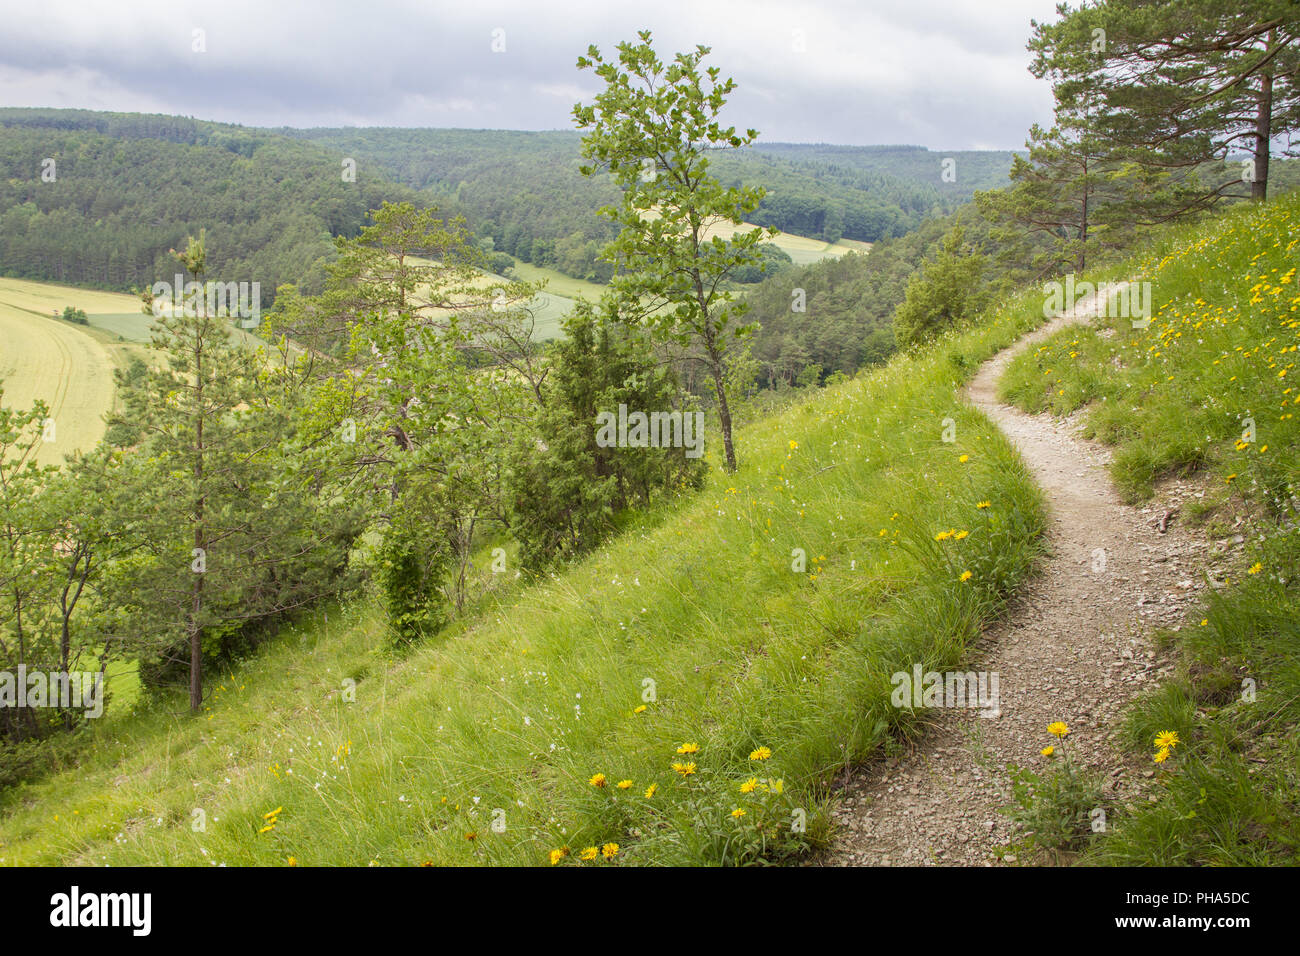 Geschützte Landschaft im Taubertal in der Nähe Koenigheim, Deutschland Stockfoto